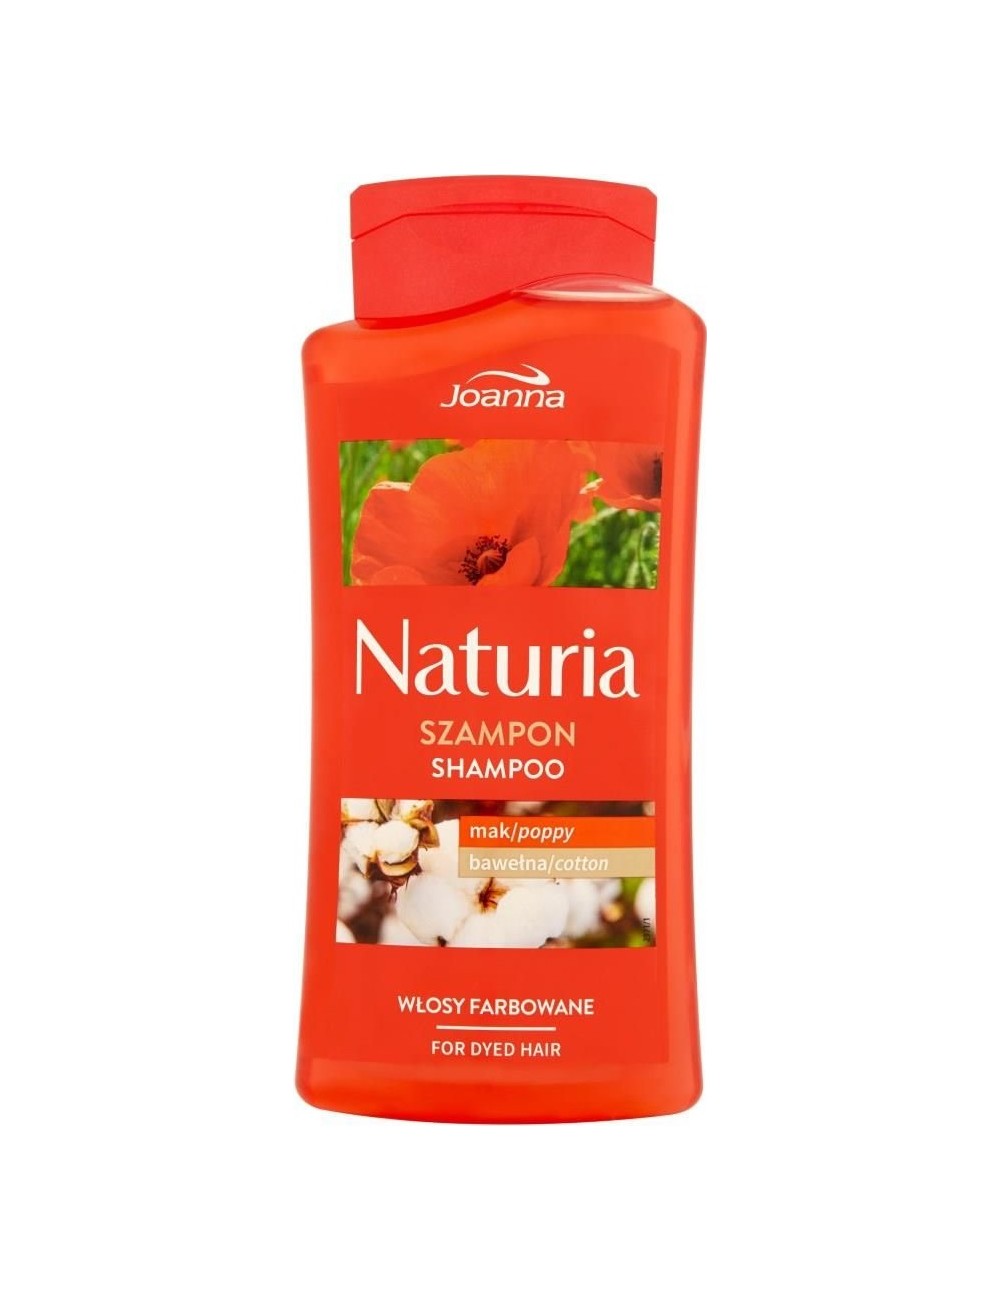 Joanna naturia szampon z makiem i bawełną do włosów farbowanych 500ml